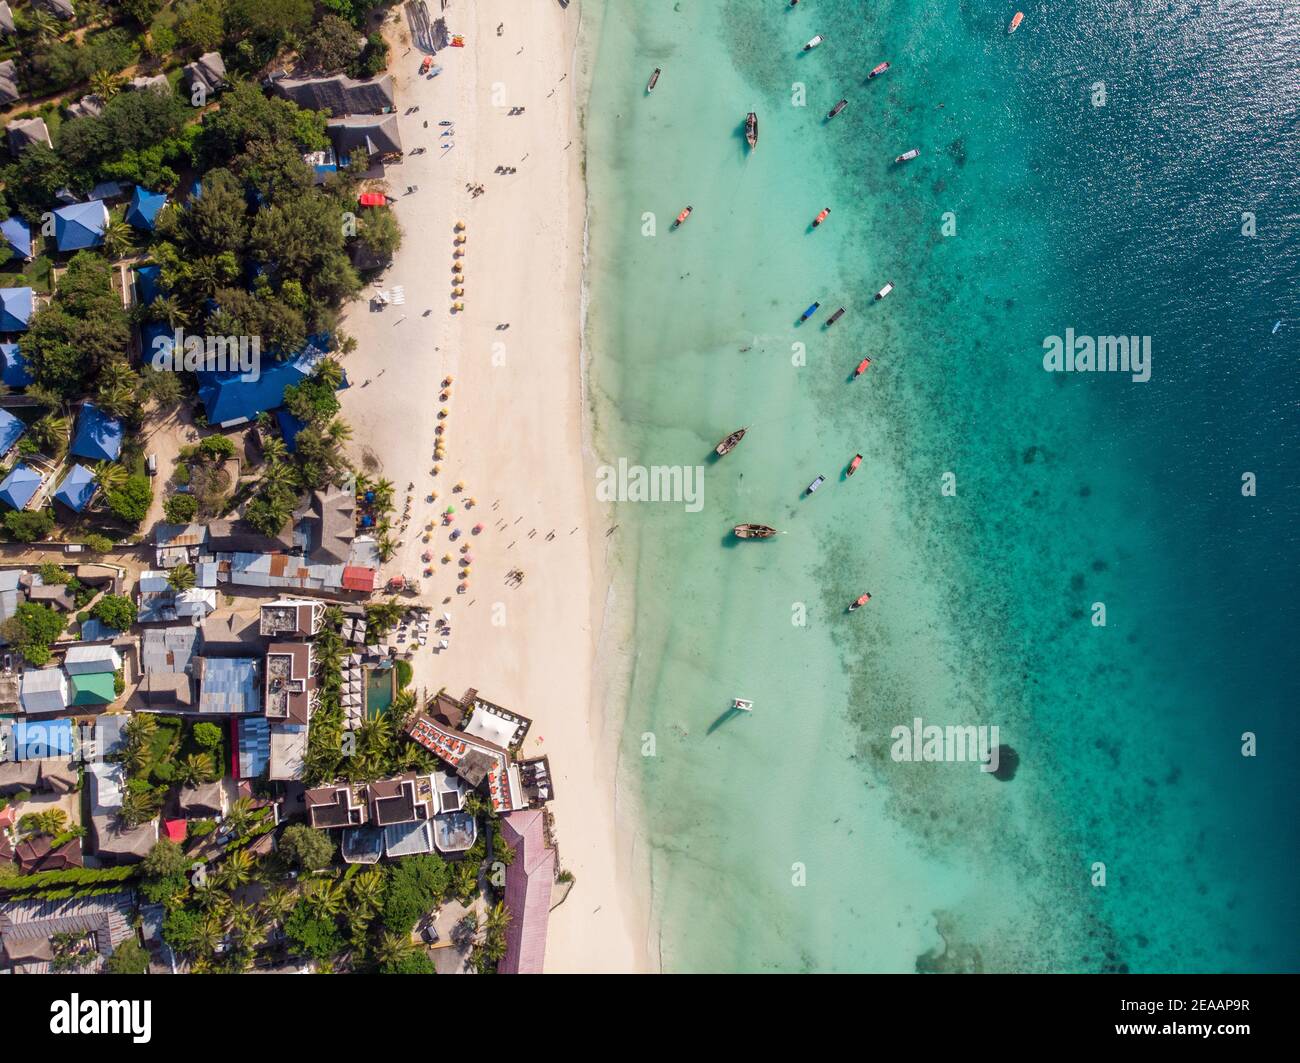 Vue aérienne sur la piscine, parasols, plage de sable avec palmiers verts. Côte de l'océan Indien au coucher du soleil en été. Zanzibar, Afrique. Vue de dessus. Paysage Banque D'Images